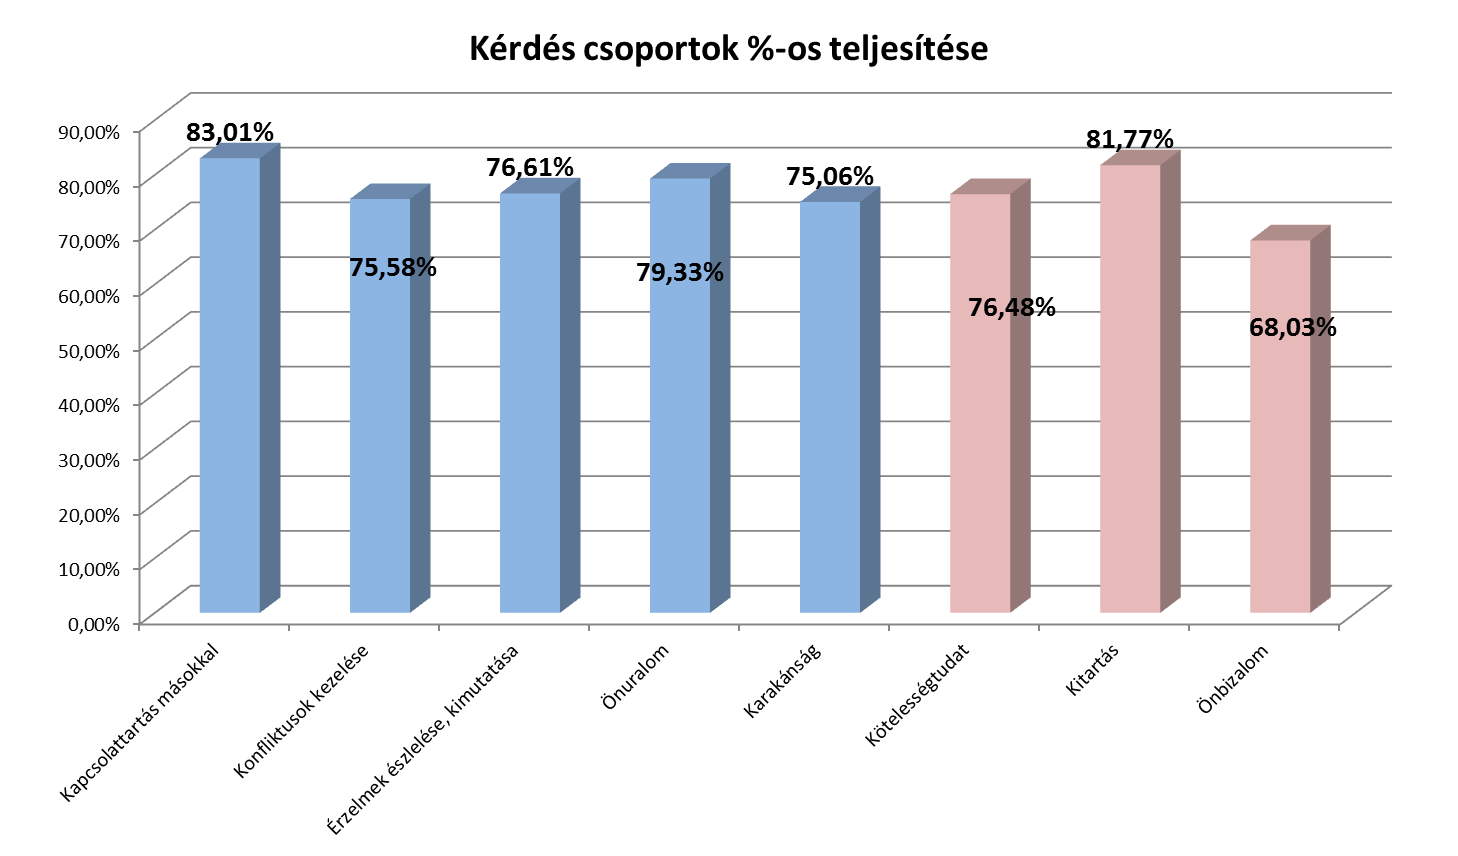 Klebersberg Intézményfenntartó Központ, Érdi Tankerület 2. ábra. Kérdéscsoportokra adott válaszok %-os eredménye Vizsgálatunkhoz Eger város vizsgálati anyagát használtuk fel. Legeredményesebben az 5.